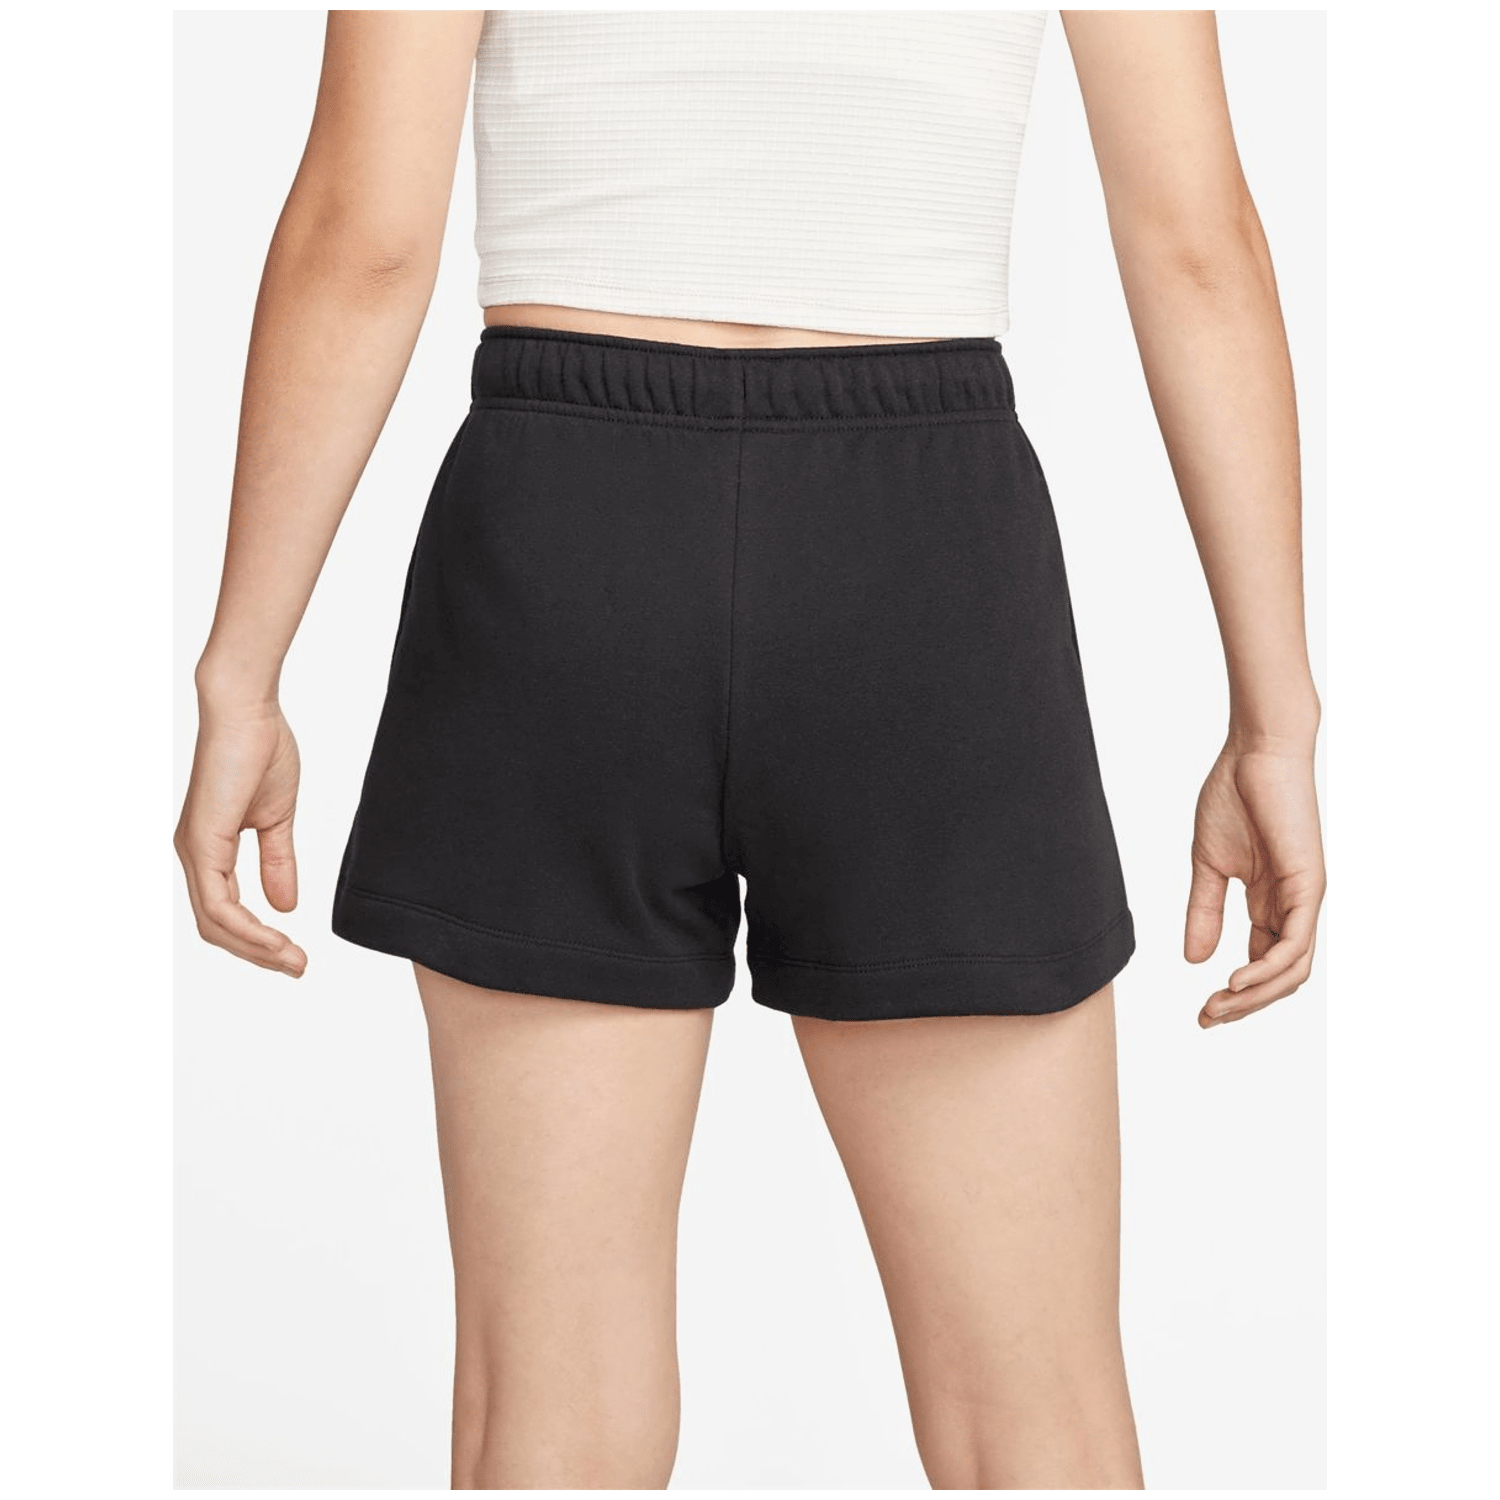 Nike Sportswear Club Mid-Rise Damen Shorts